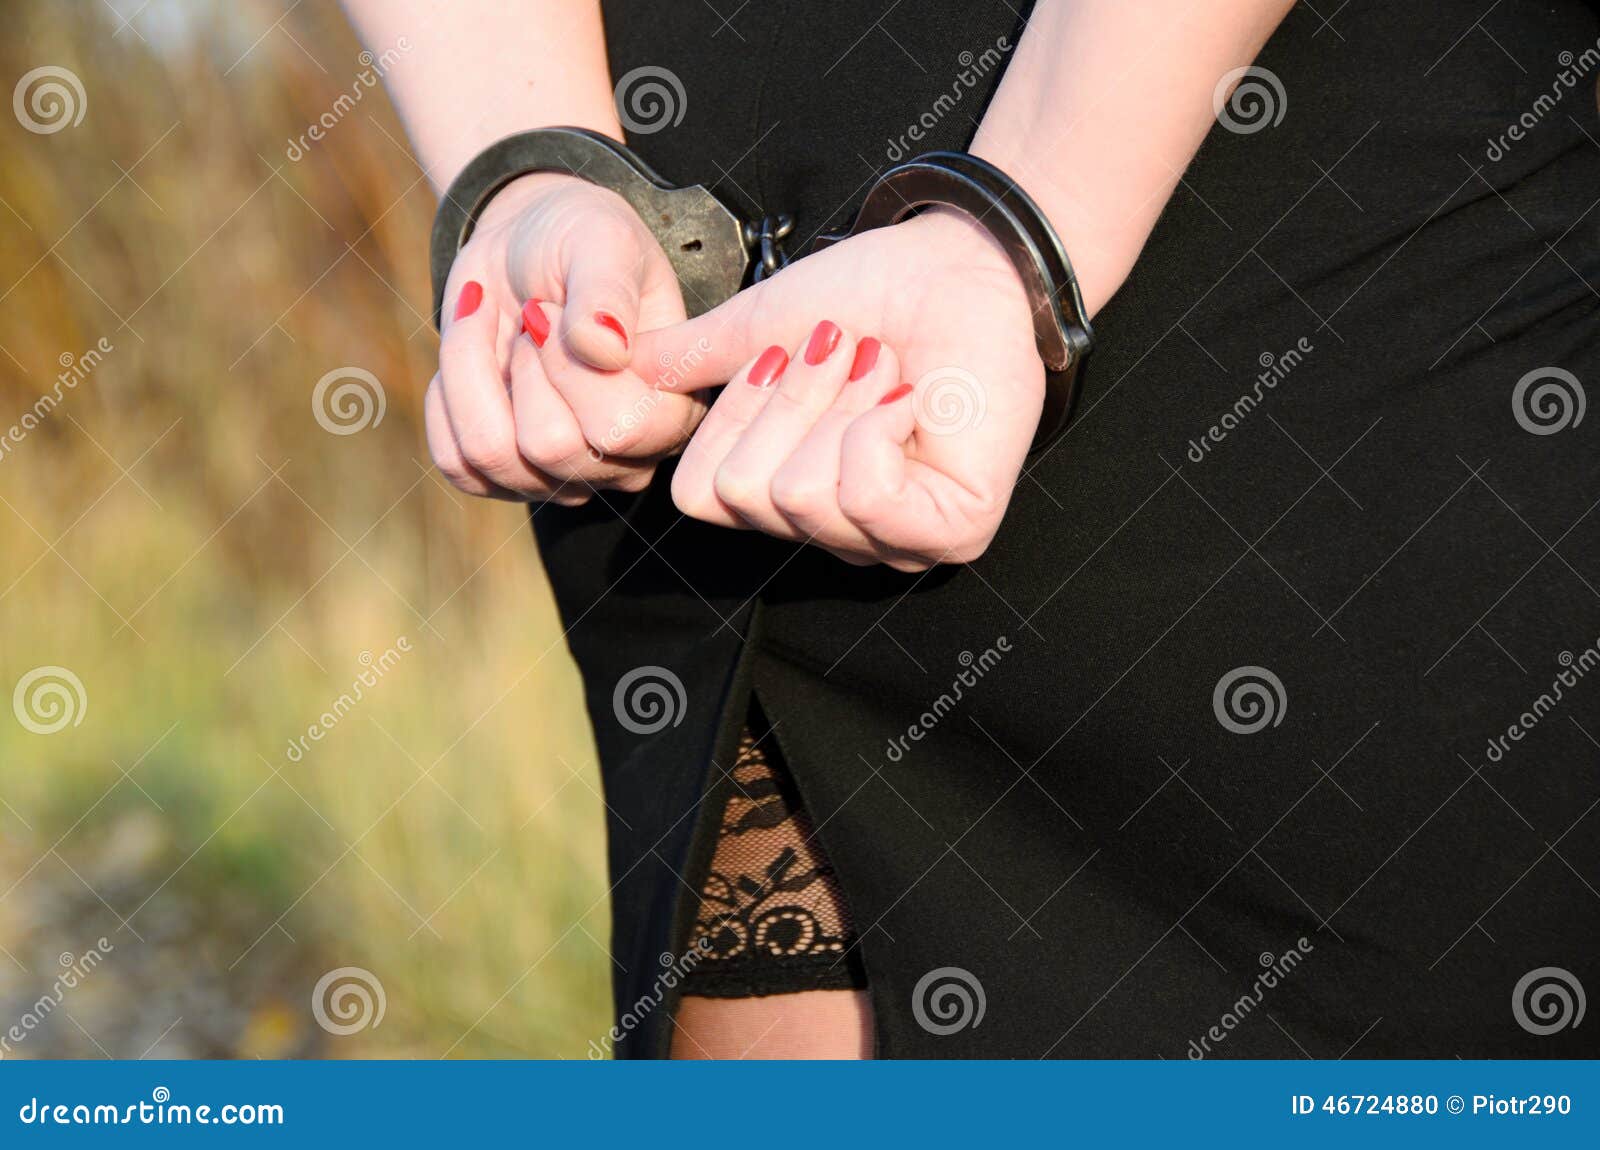 Парень надевает наручники. Кандалы на руках и ногах. Девушка надевает кандалы. Женские руки в наручниках. Красивые девушки в кандалах.